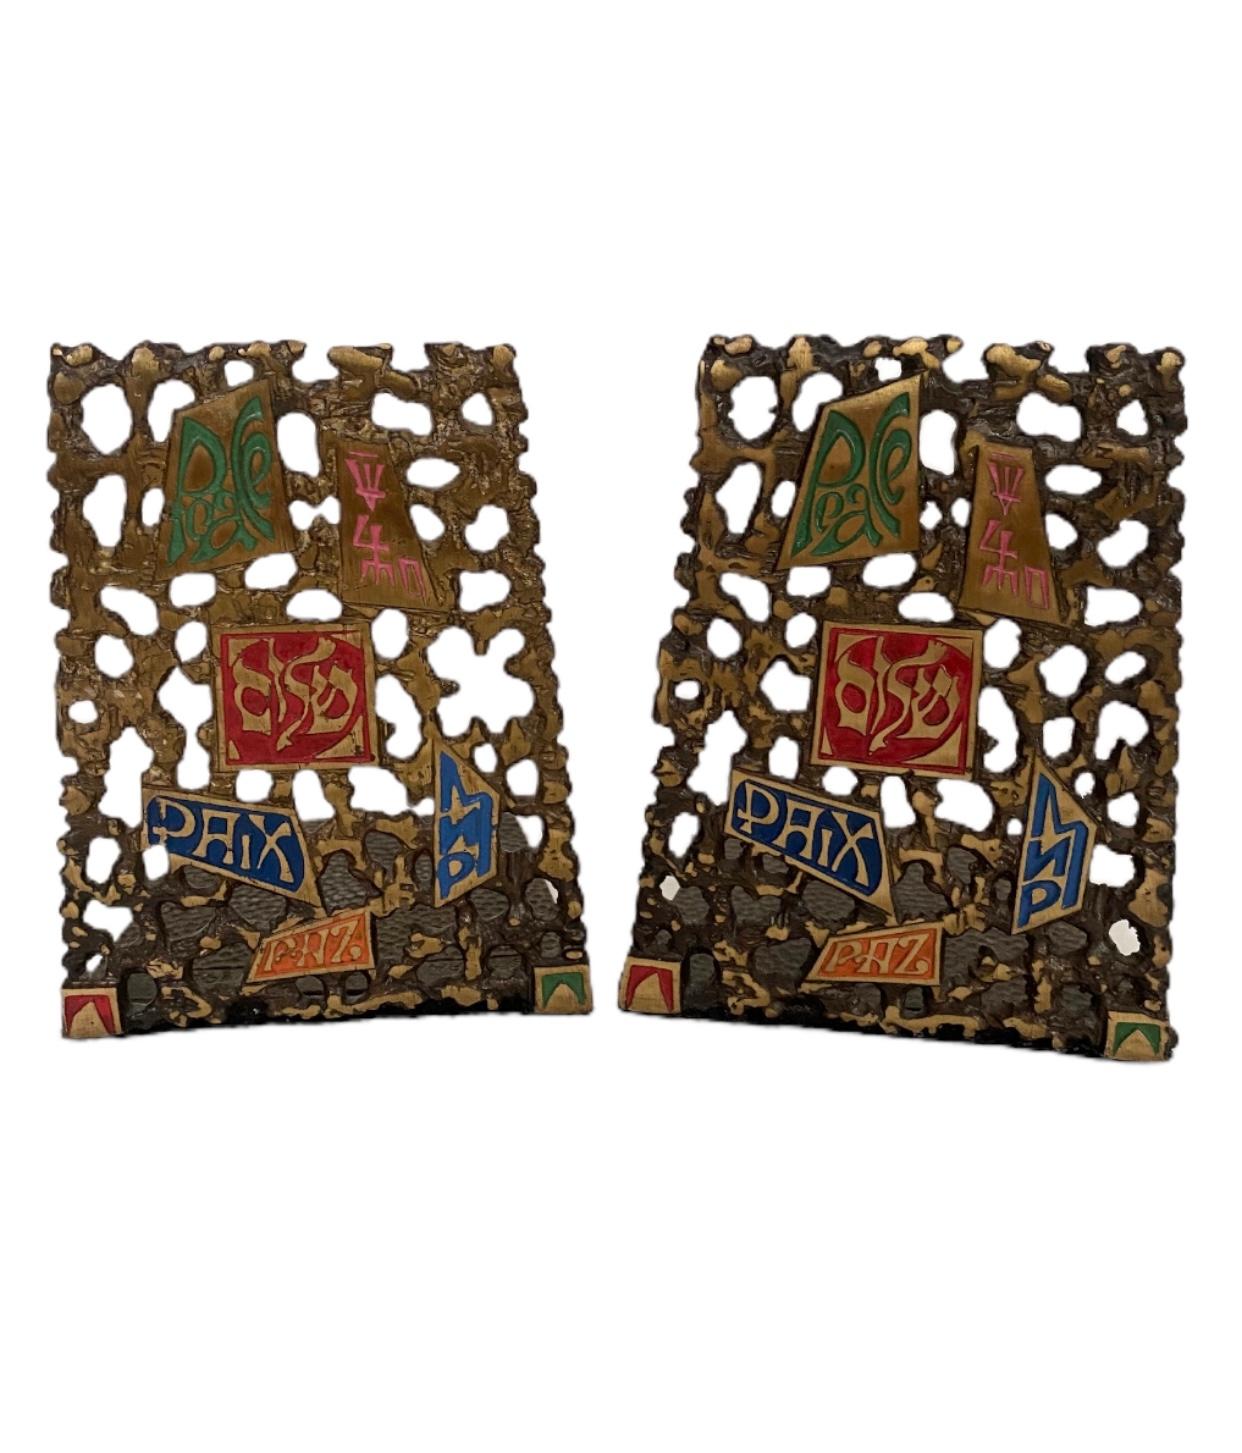 Schöne Paar Midcentury modernen Messing Shalom Judaica Buchstützen. Messing mit schöner Patina und farbig emaillierten Akzenten. Filz unter den Ständern zur Verwendung auf verschiedenen Oberflächen, signiert 